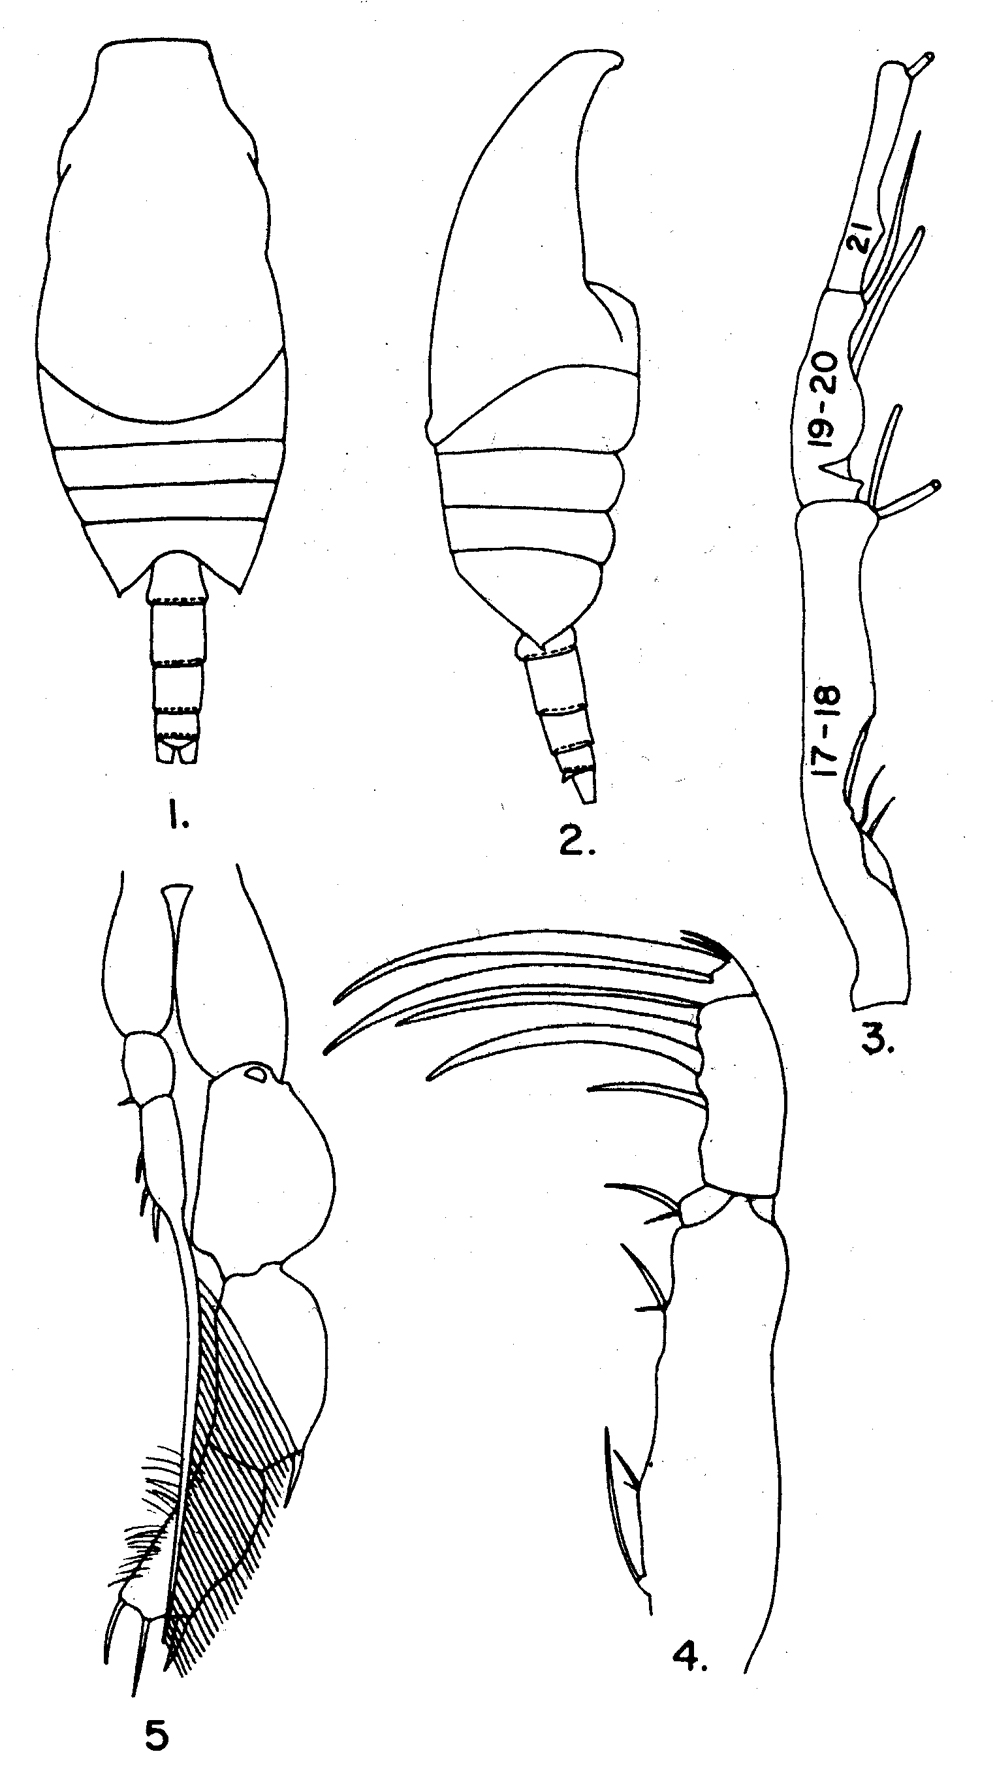 Espèce Candacia simplex - Planche 6 de figures morphologiques